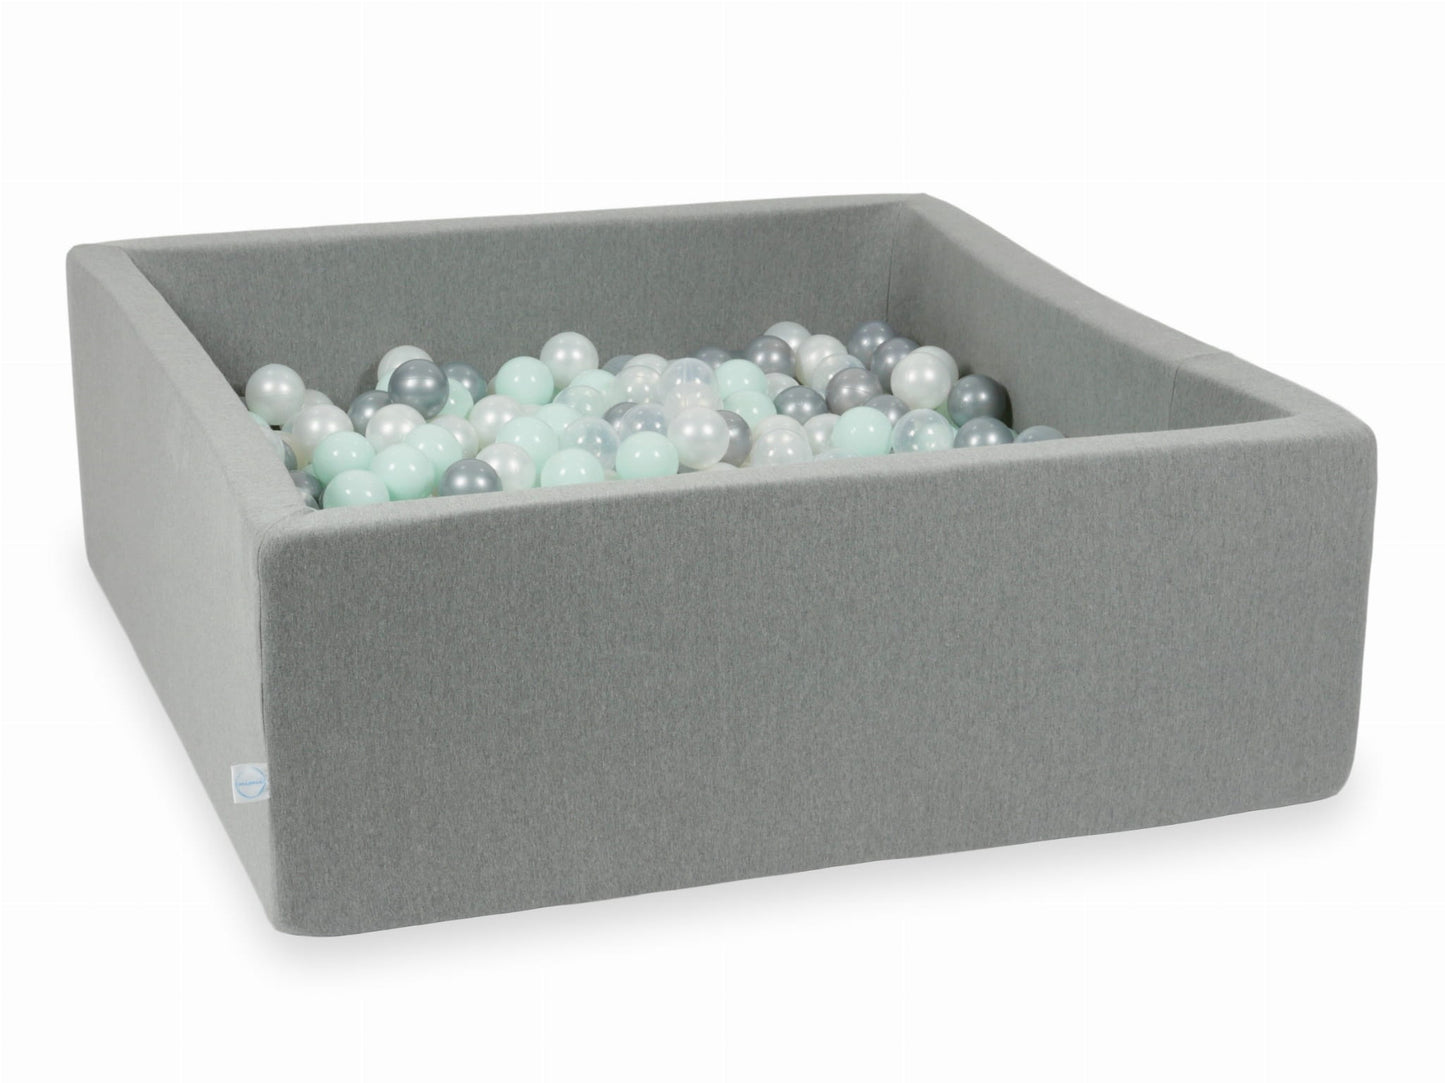 Piscine à Balles 110x110x40 grise avec balles 600 pcs (transparent, perle, argent, menthe claire)